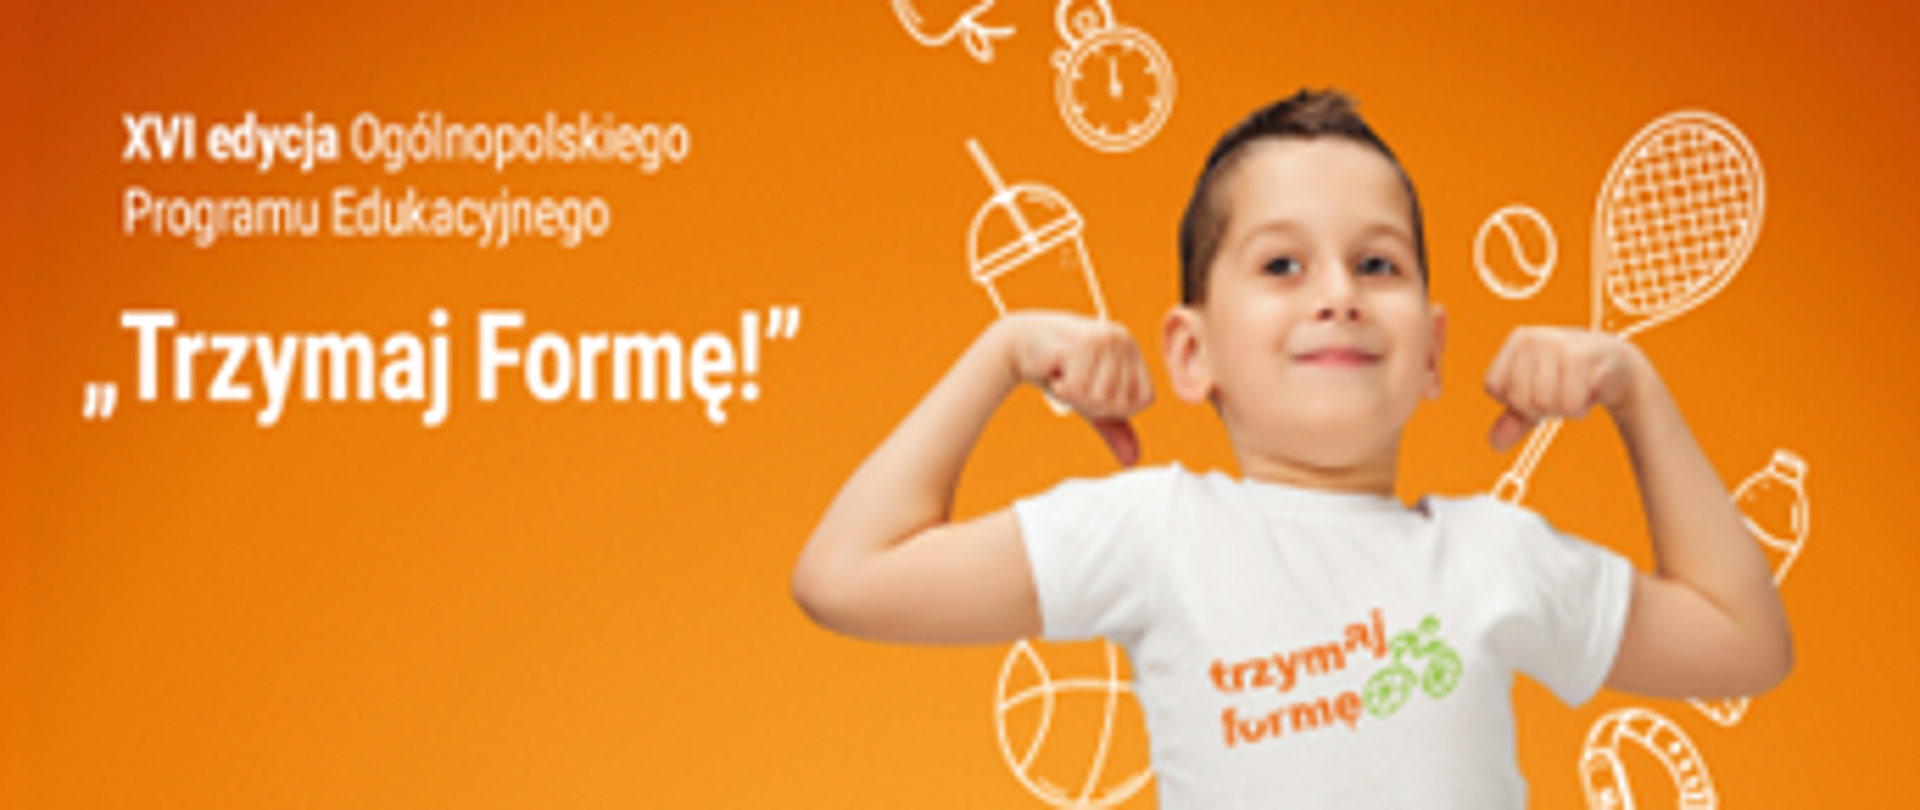 Napisy : 16 edycja Ogólnopolskiego Programu Edukacyjnego - Trzymaj formę - zdjęcie chłopca ok 10 letniego z napisem na koszujce Trzymaj Formę